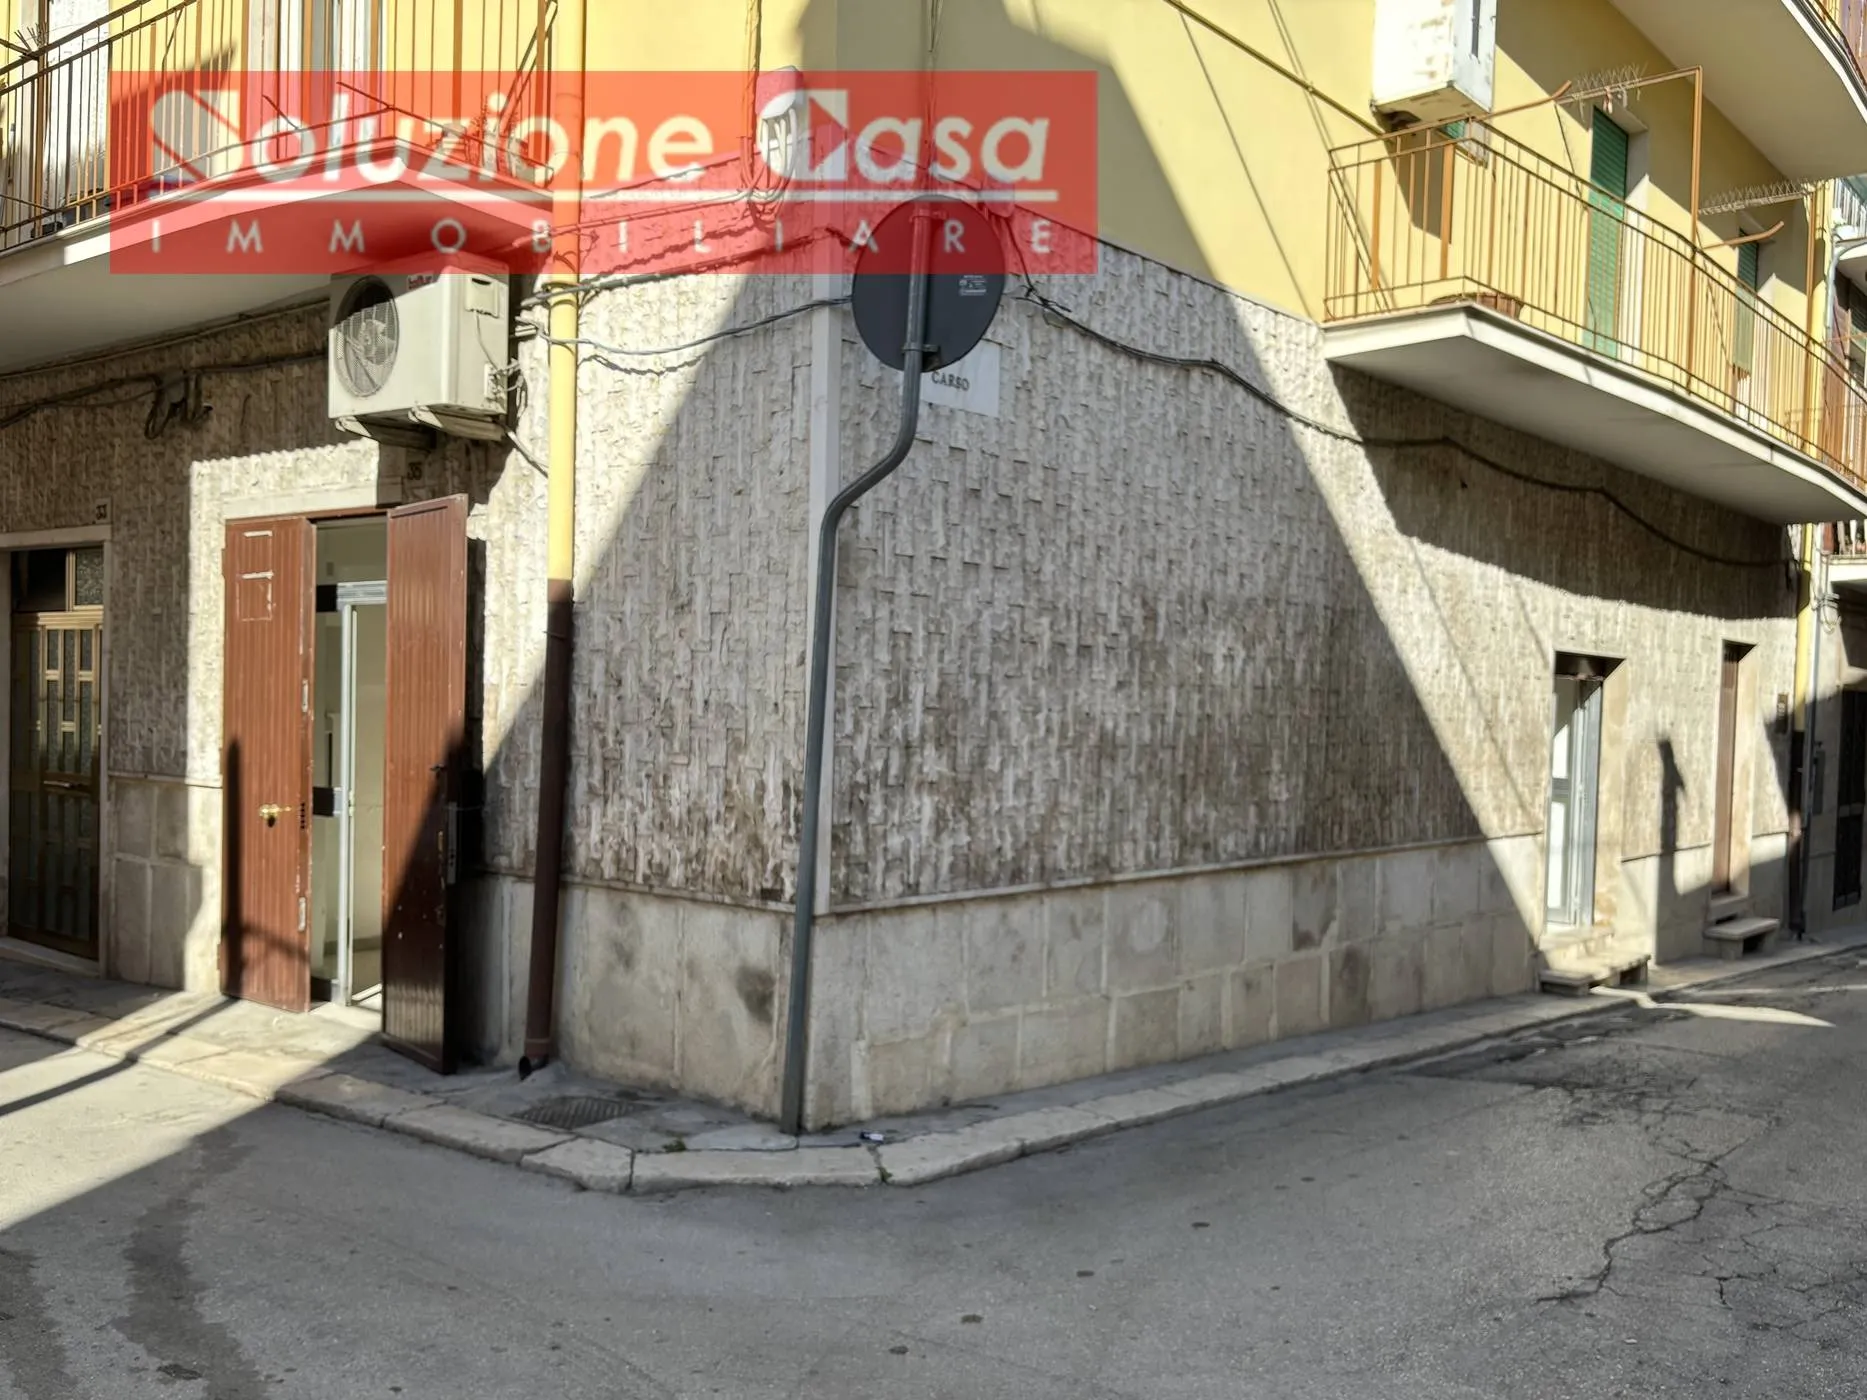 Immagine per Locale Commerciale in vendita a Canosa di Puglia via Montescupolo